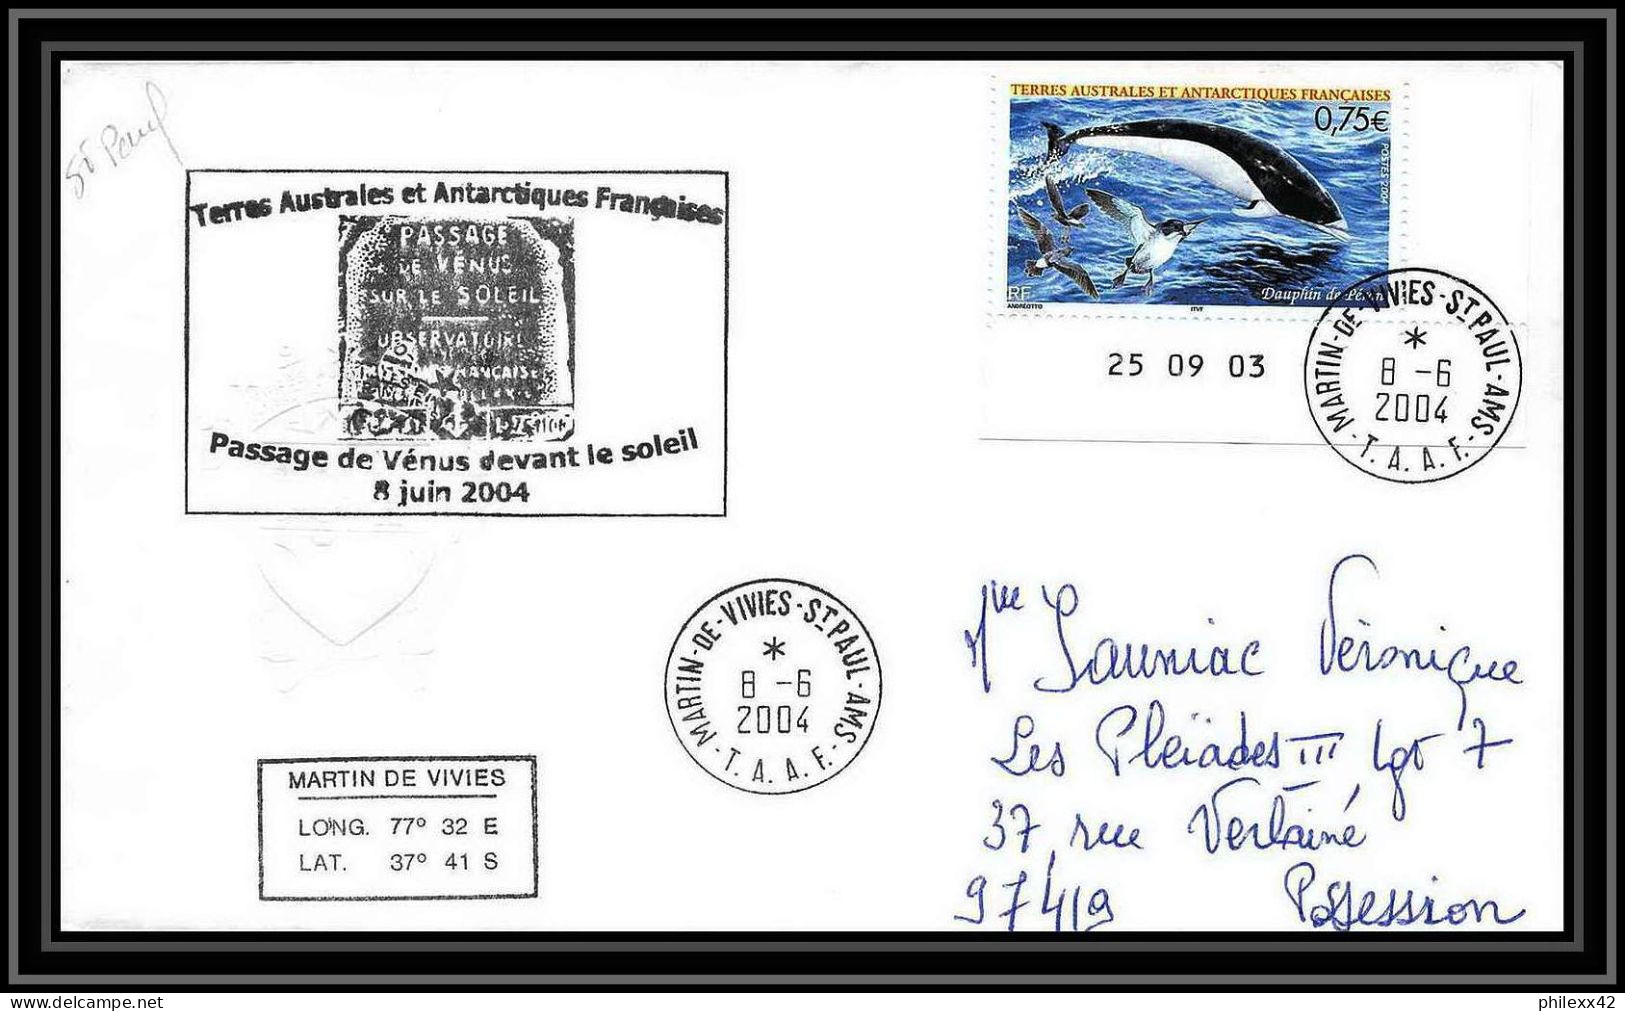 2446 ANTARCTIC Terres Australes TAAF Lettre Dufresne 2 N°395 PASSAGE DE VENUS DEVANT LE SOLEIL 2004 Coin Daté Dauphin - Antarktis-Expeditionen